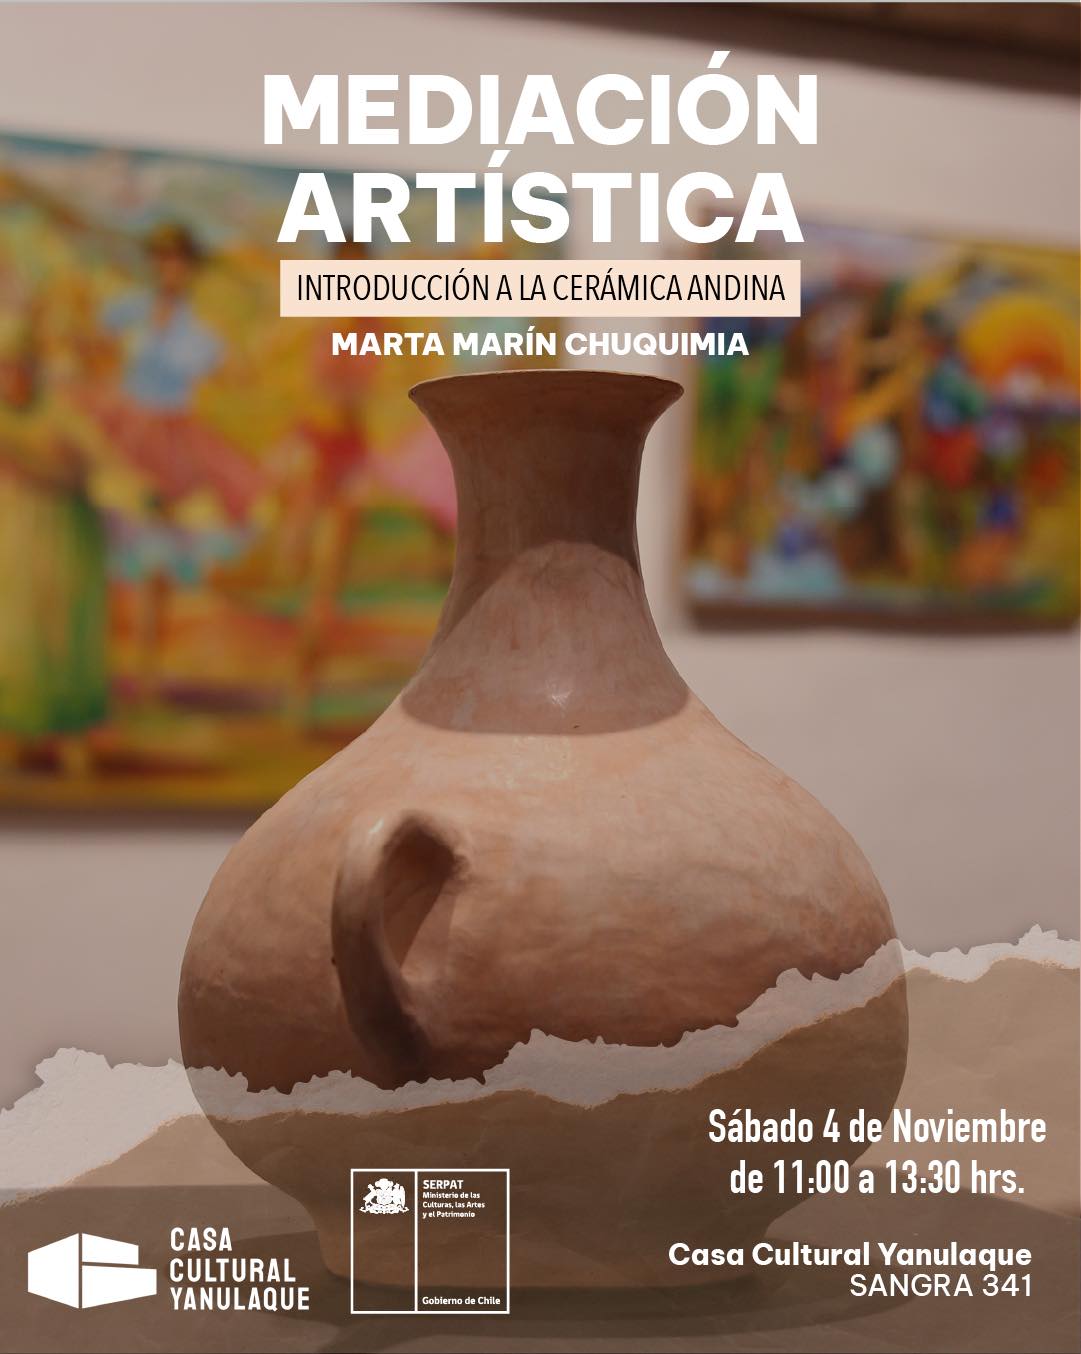 Introducción a la cerámica andina